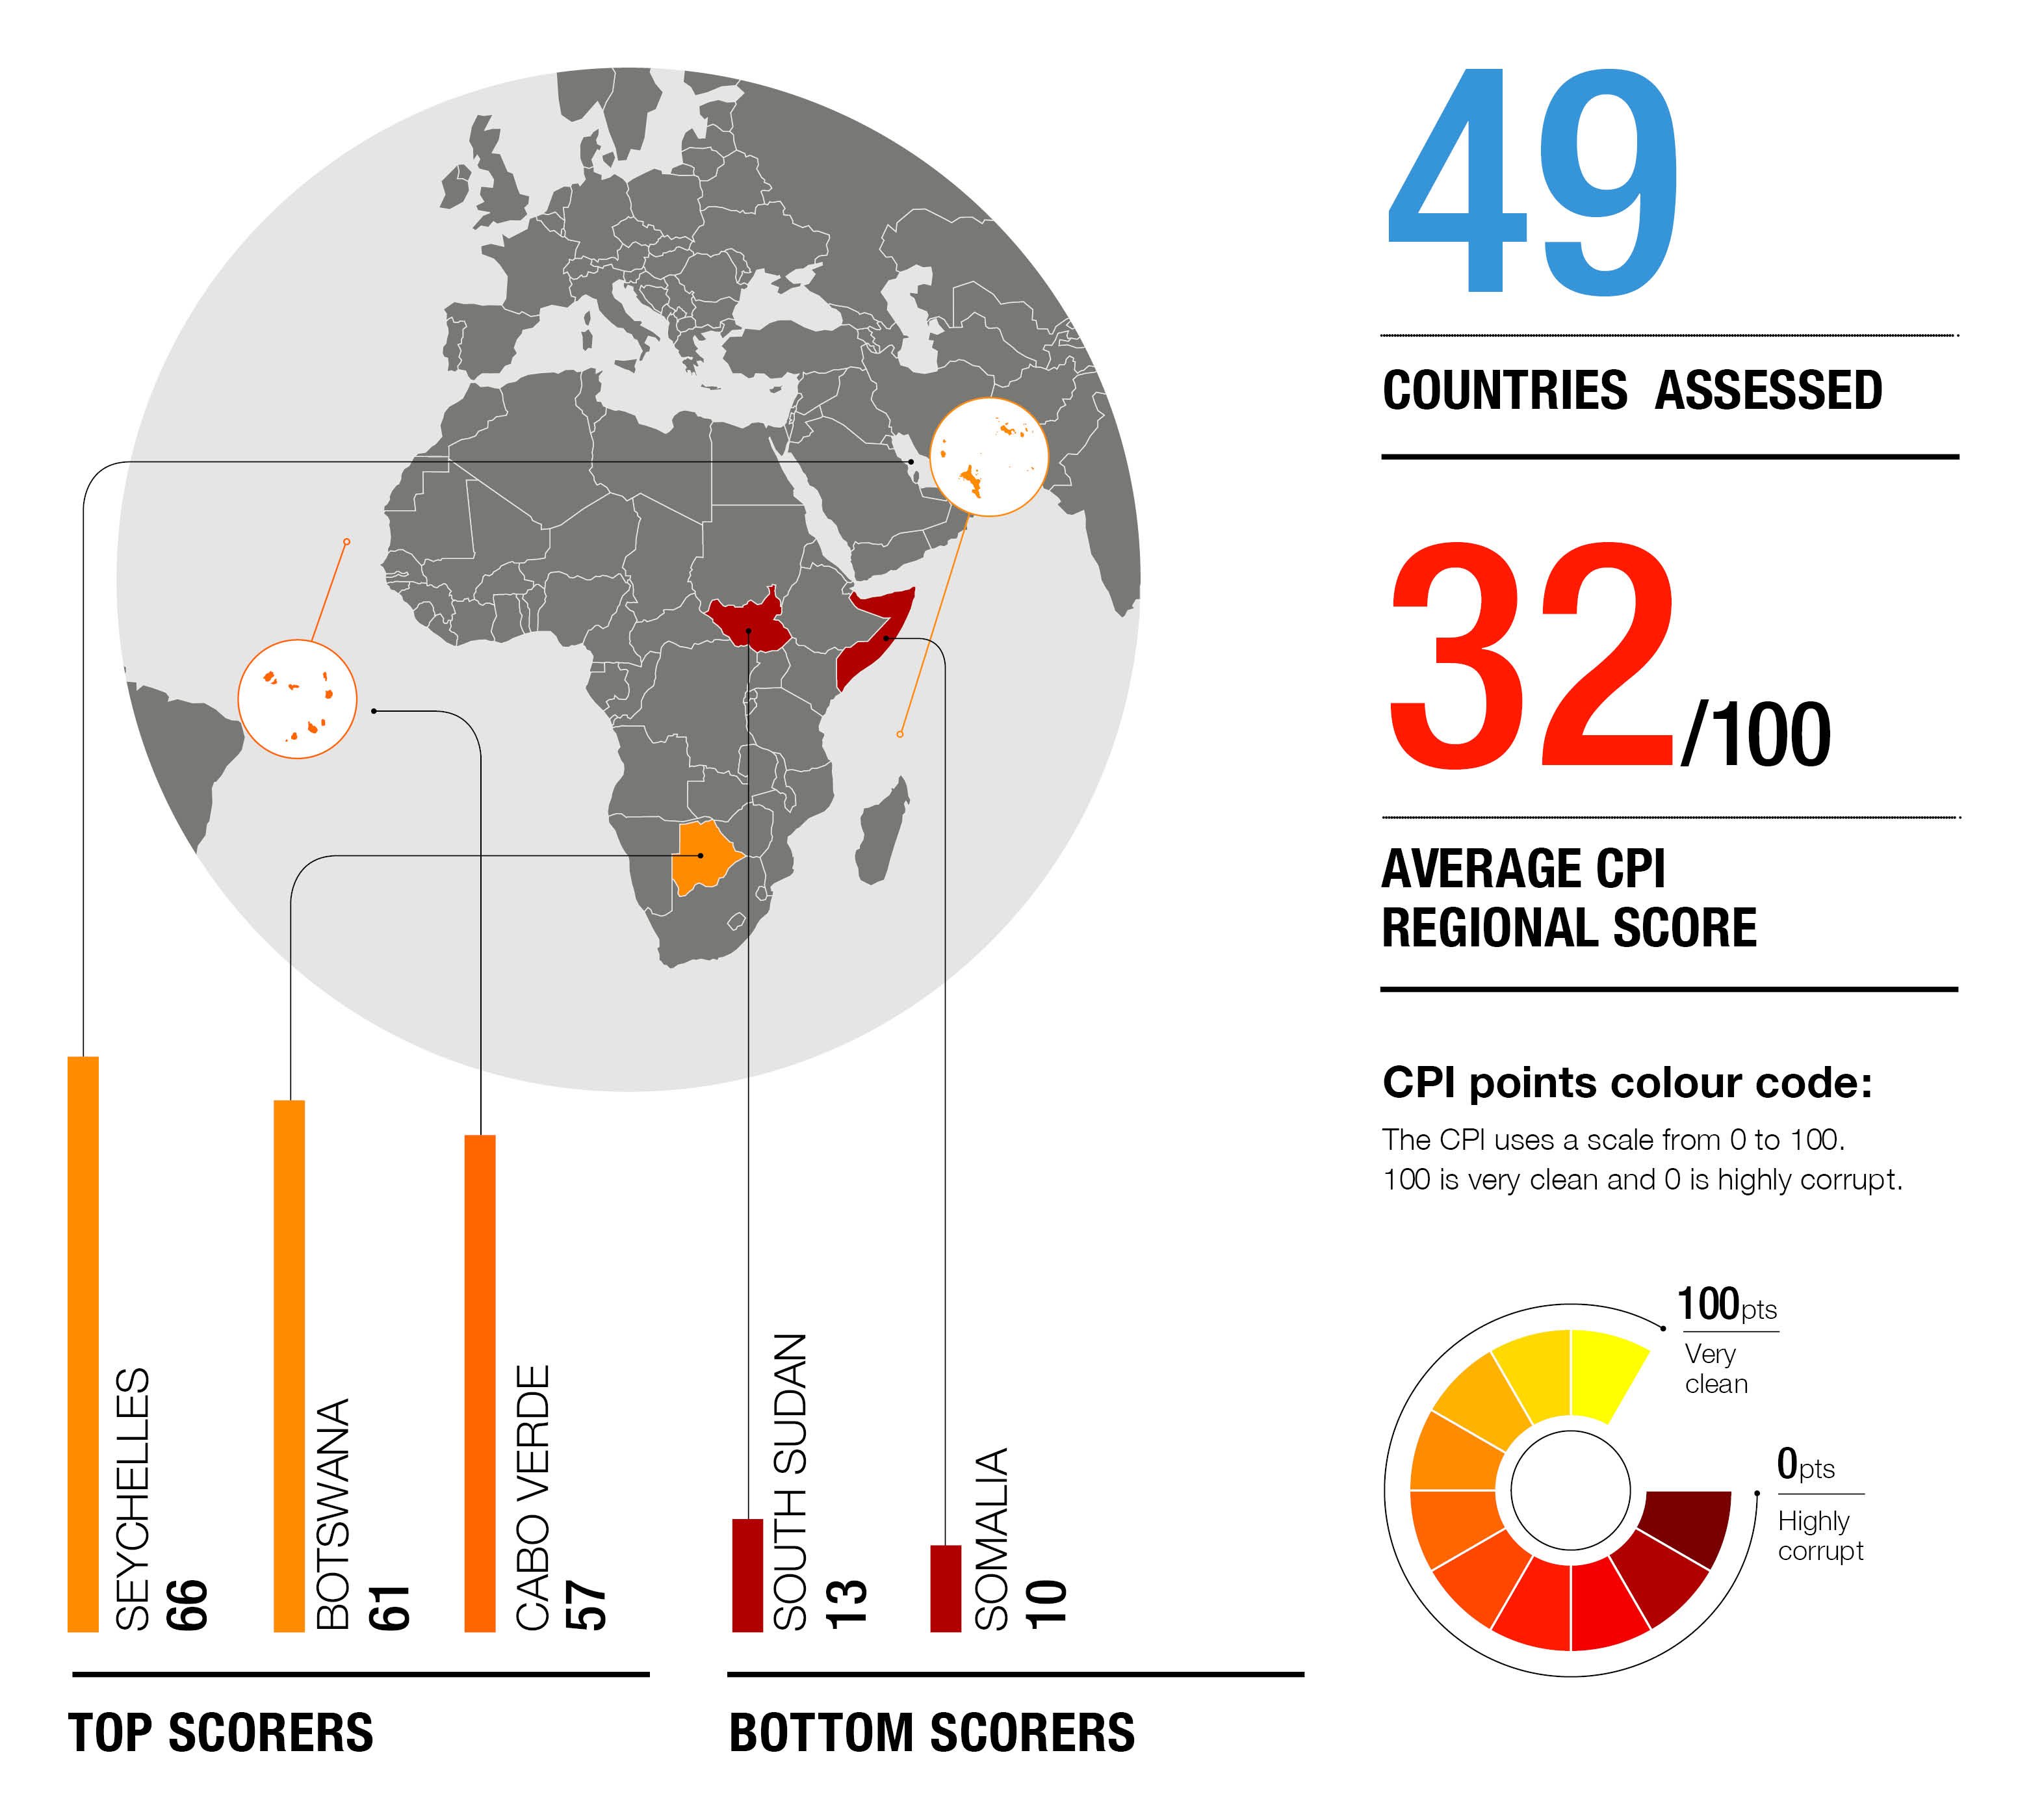 dissertation sur la corruption en afrique pdf